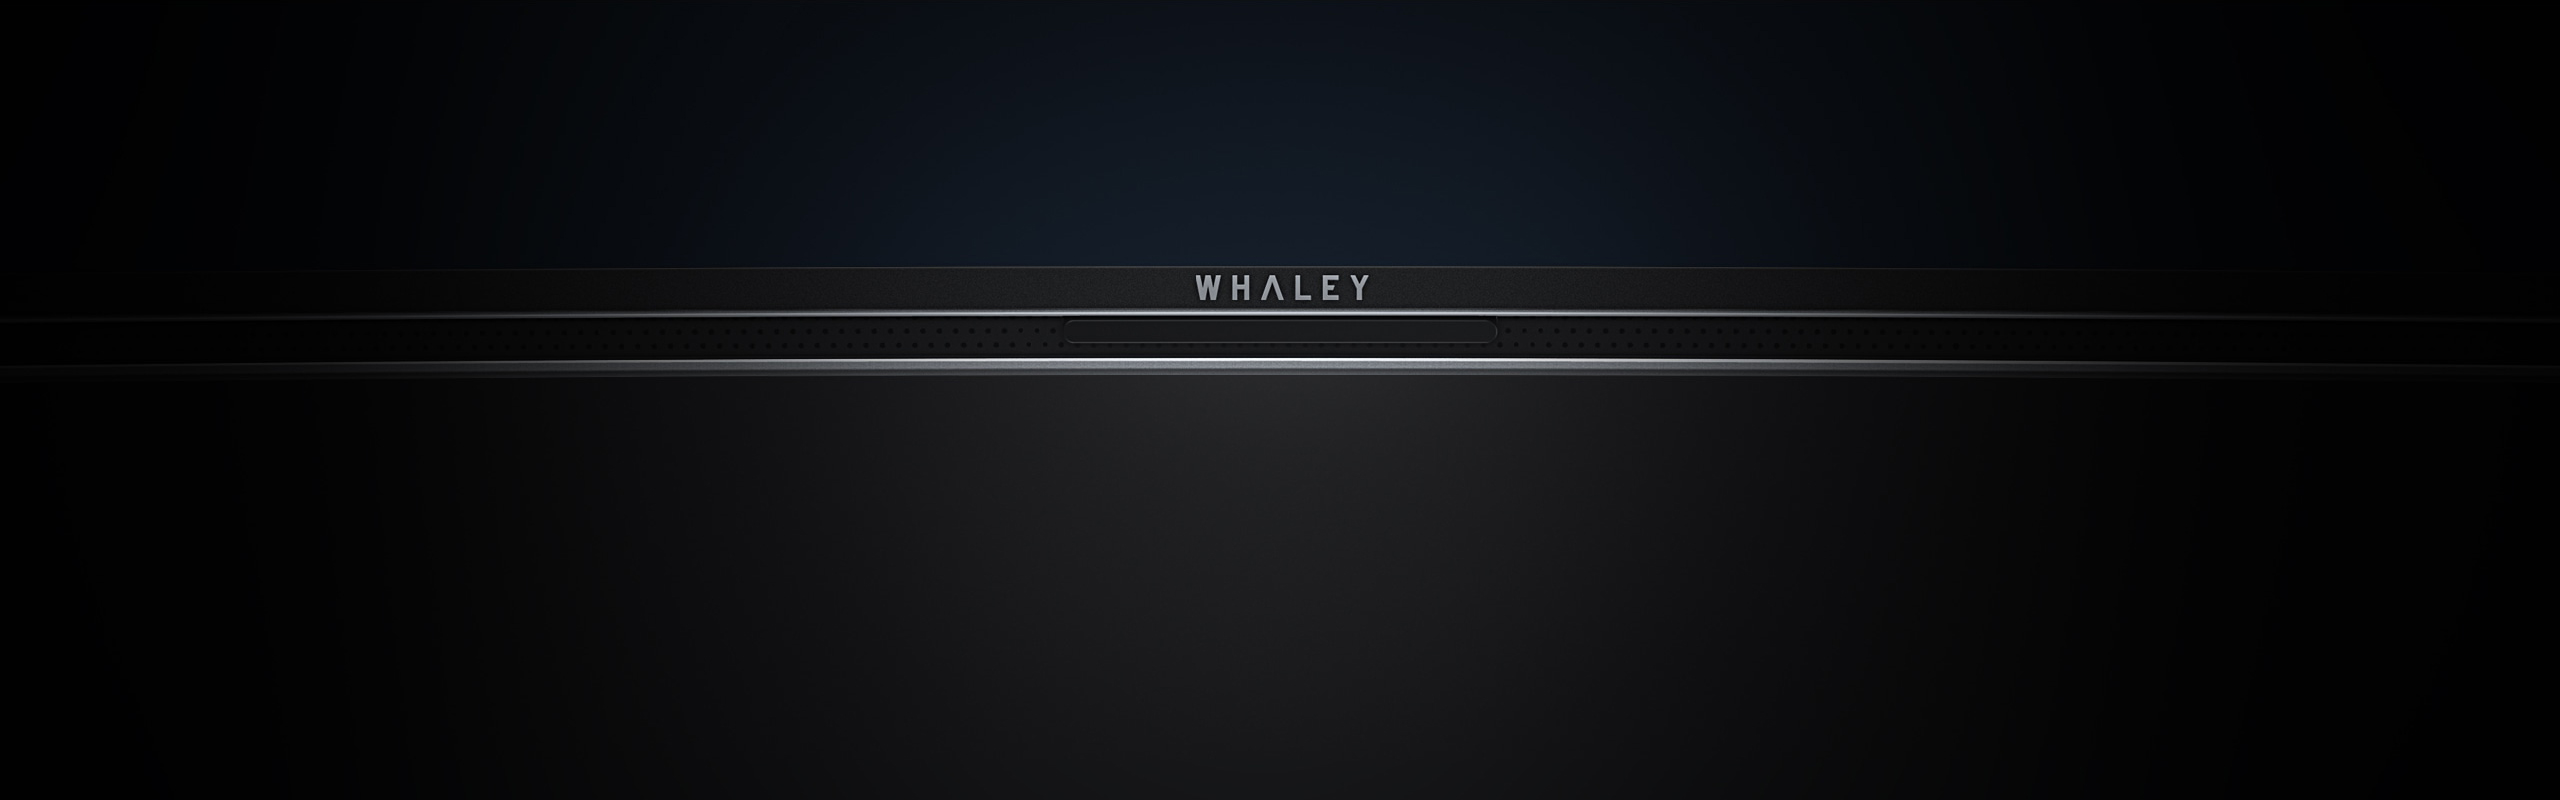 微鲸电视弧线曲面设计